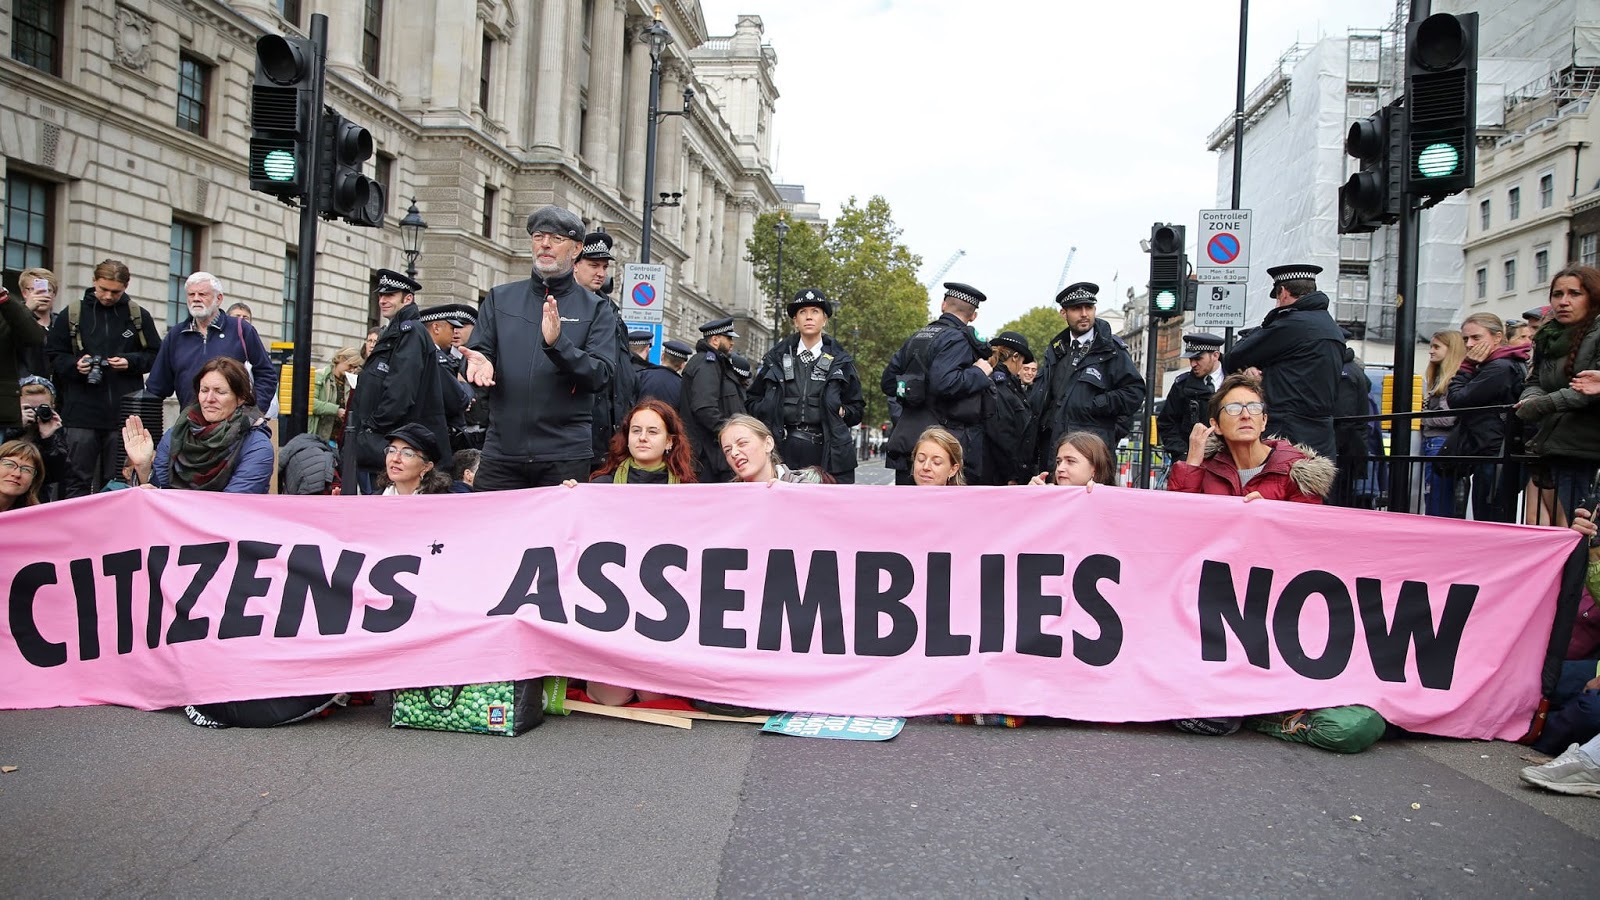 Imagen de manifestantes bloqueando una calle con una gran pancarta con laspalabras "asambleas ciudadanas ya" enella.